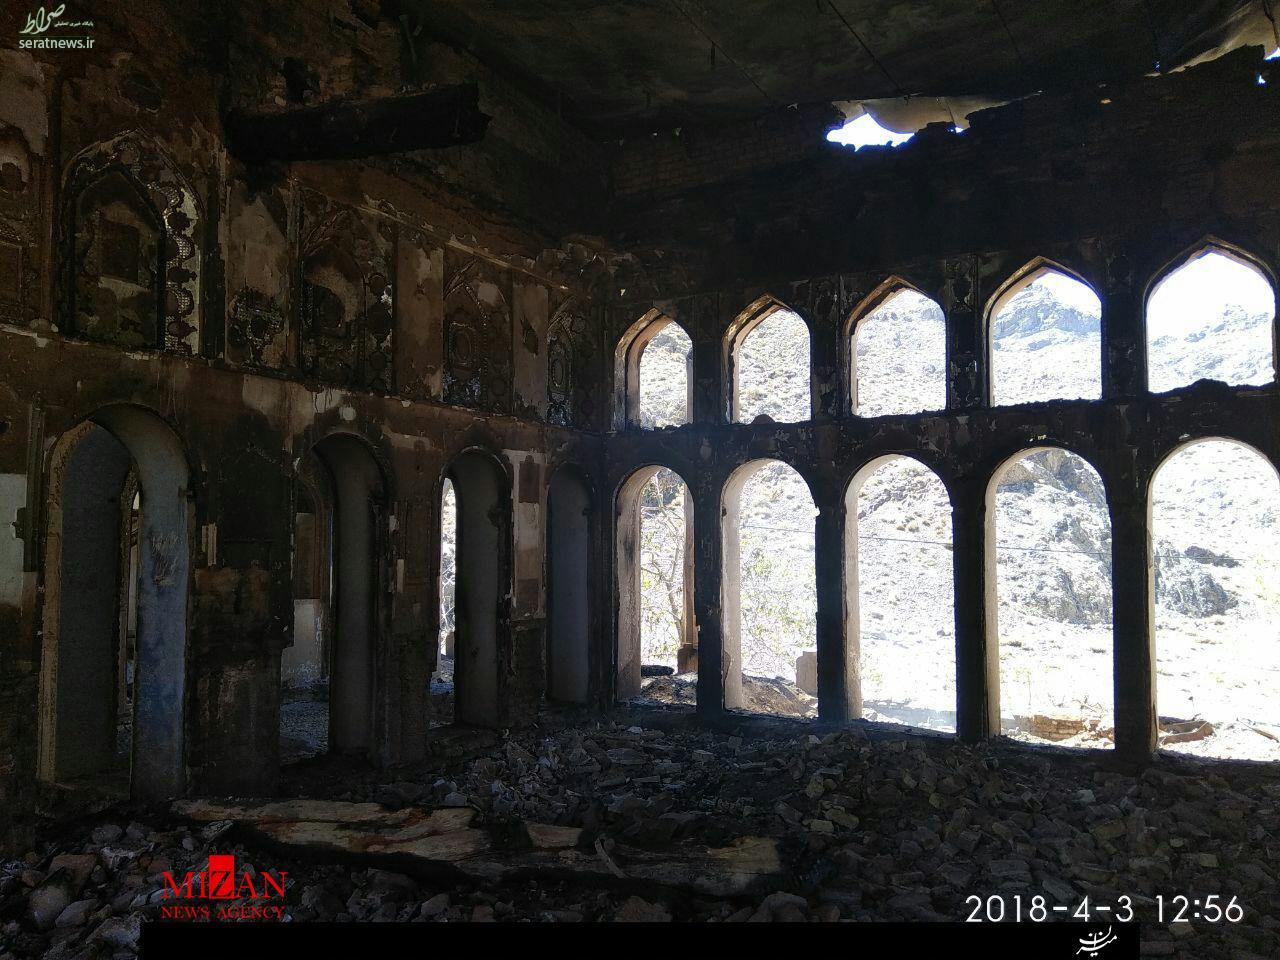 تکرار فاجعه خانه نائل در اصفهان/ بازداشت دو نفر در رابطه با آتش سوزی کاخ سرهنگ آباد + تصاویر